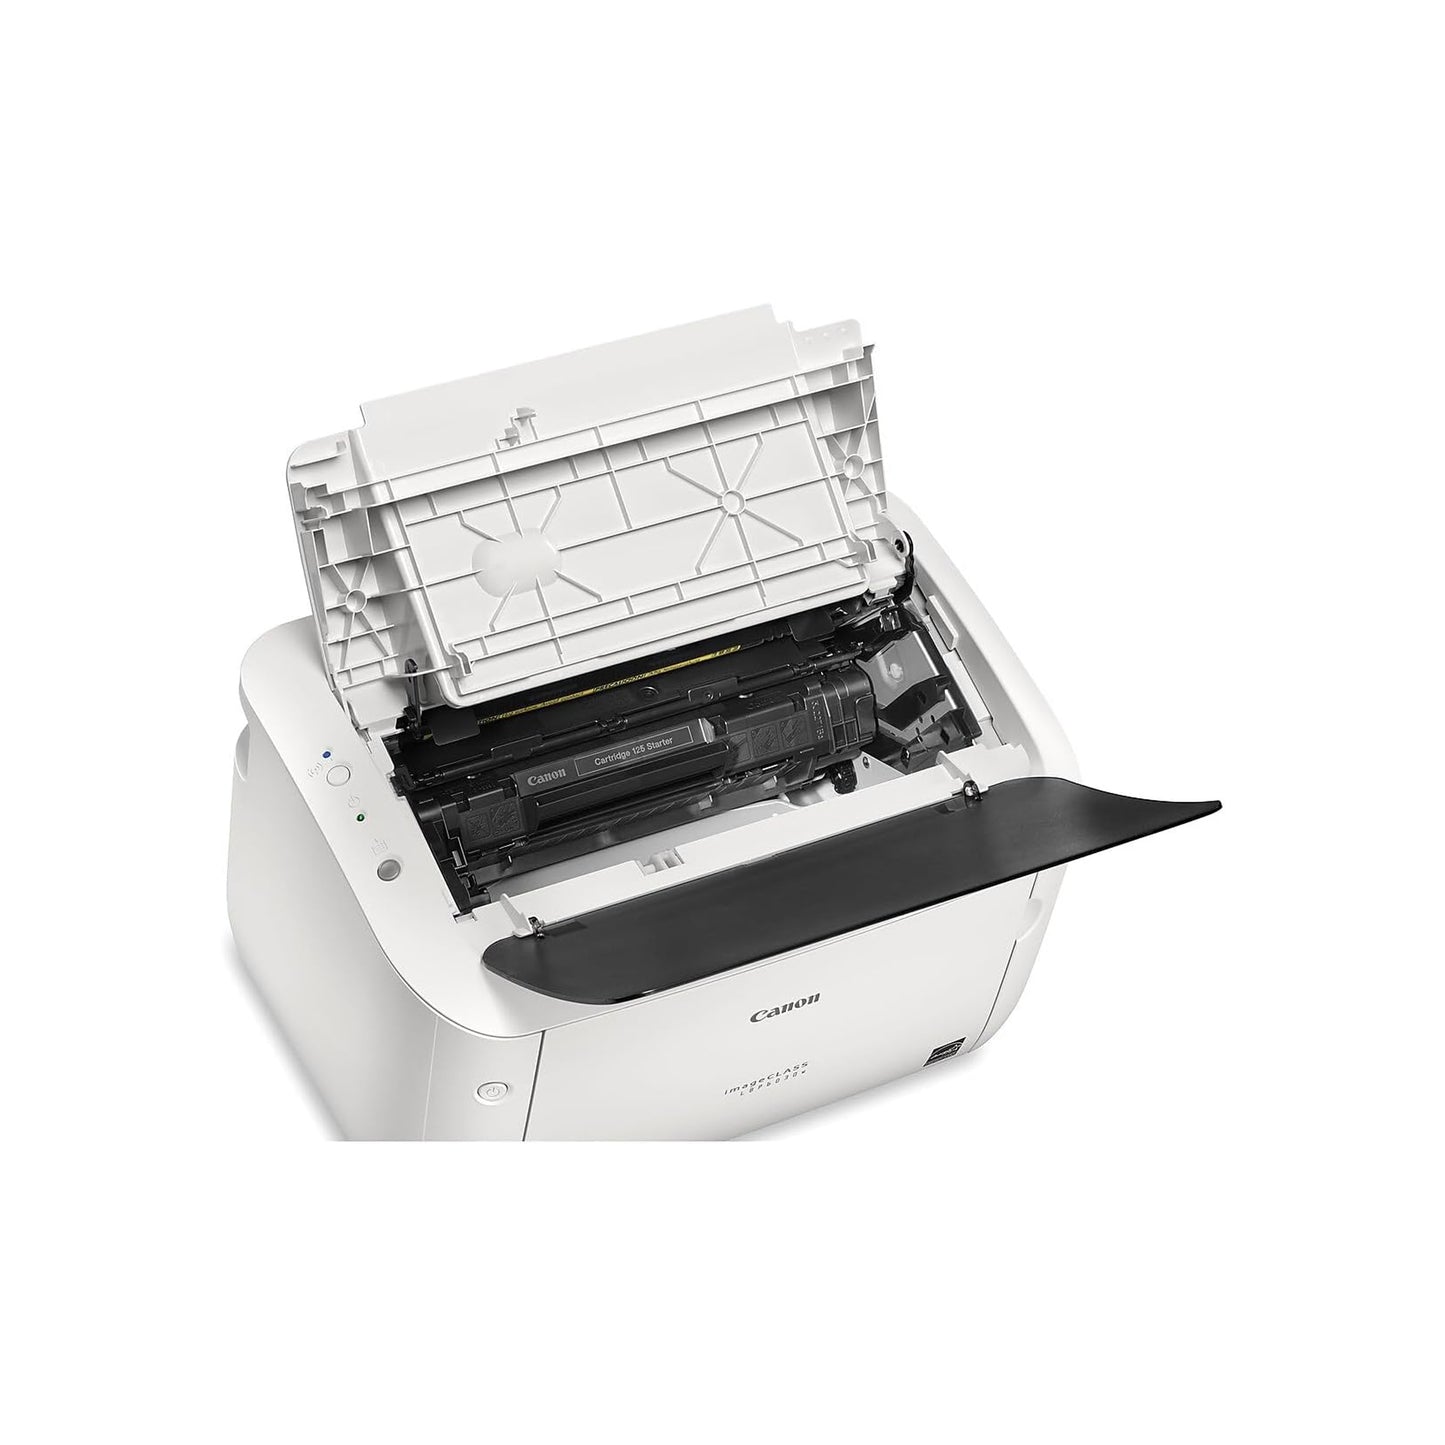 Canon imageCLASS LBP6030w - Monochrome, Compact Wireless Laser Printer, White